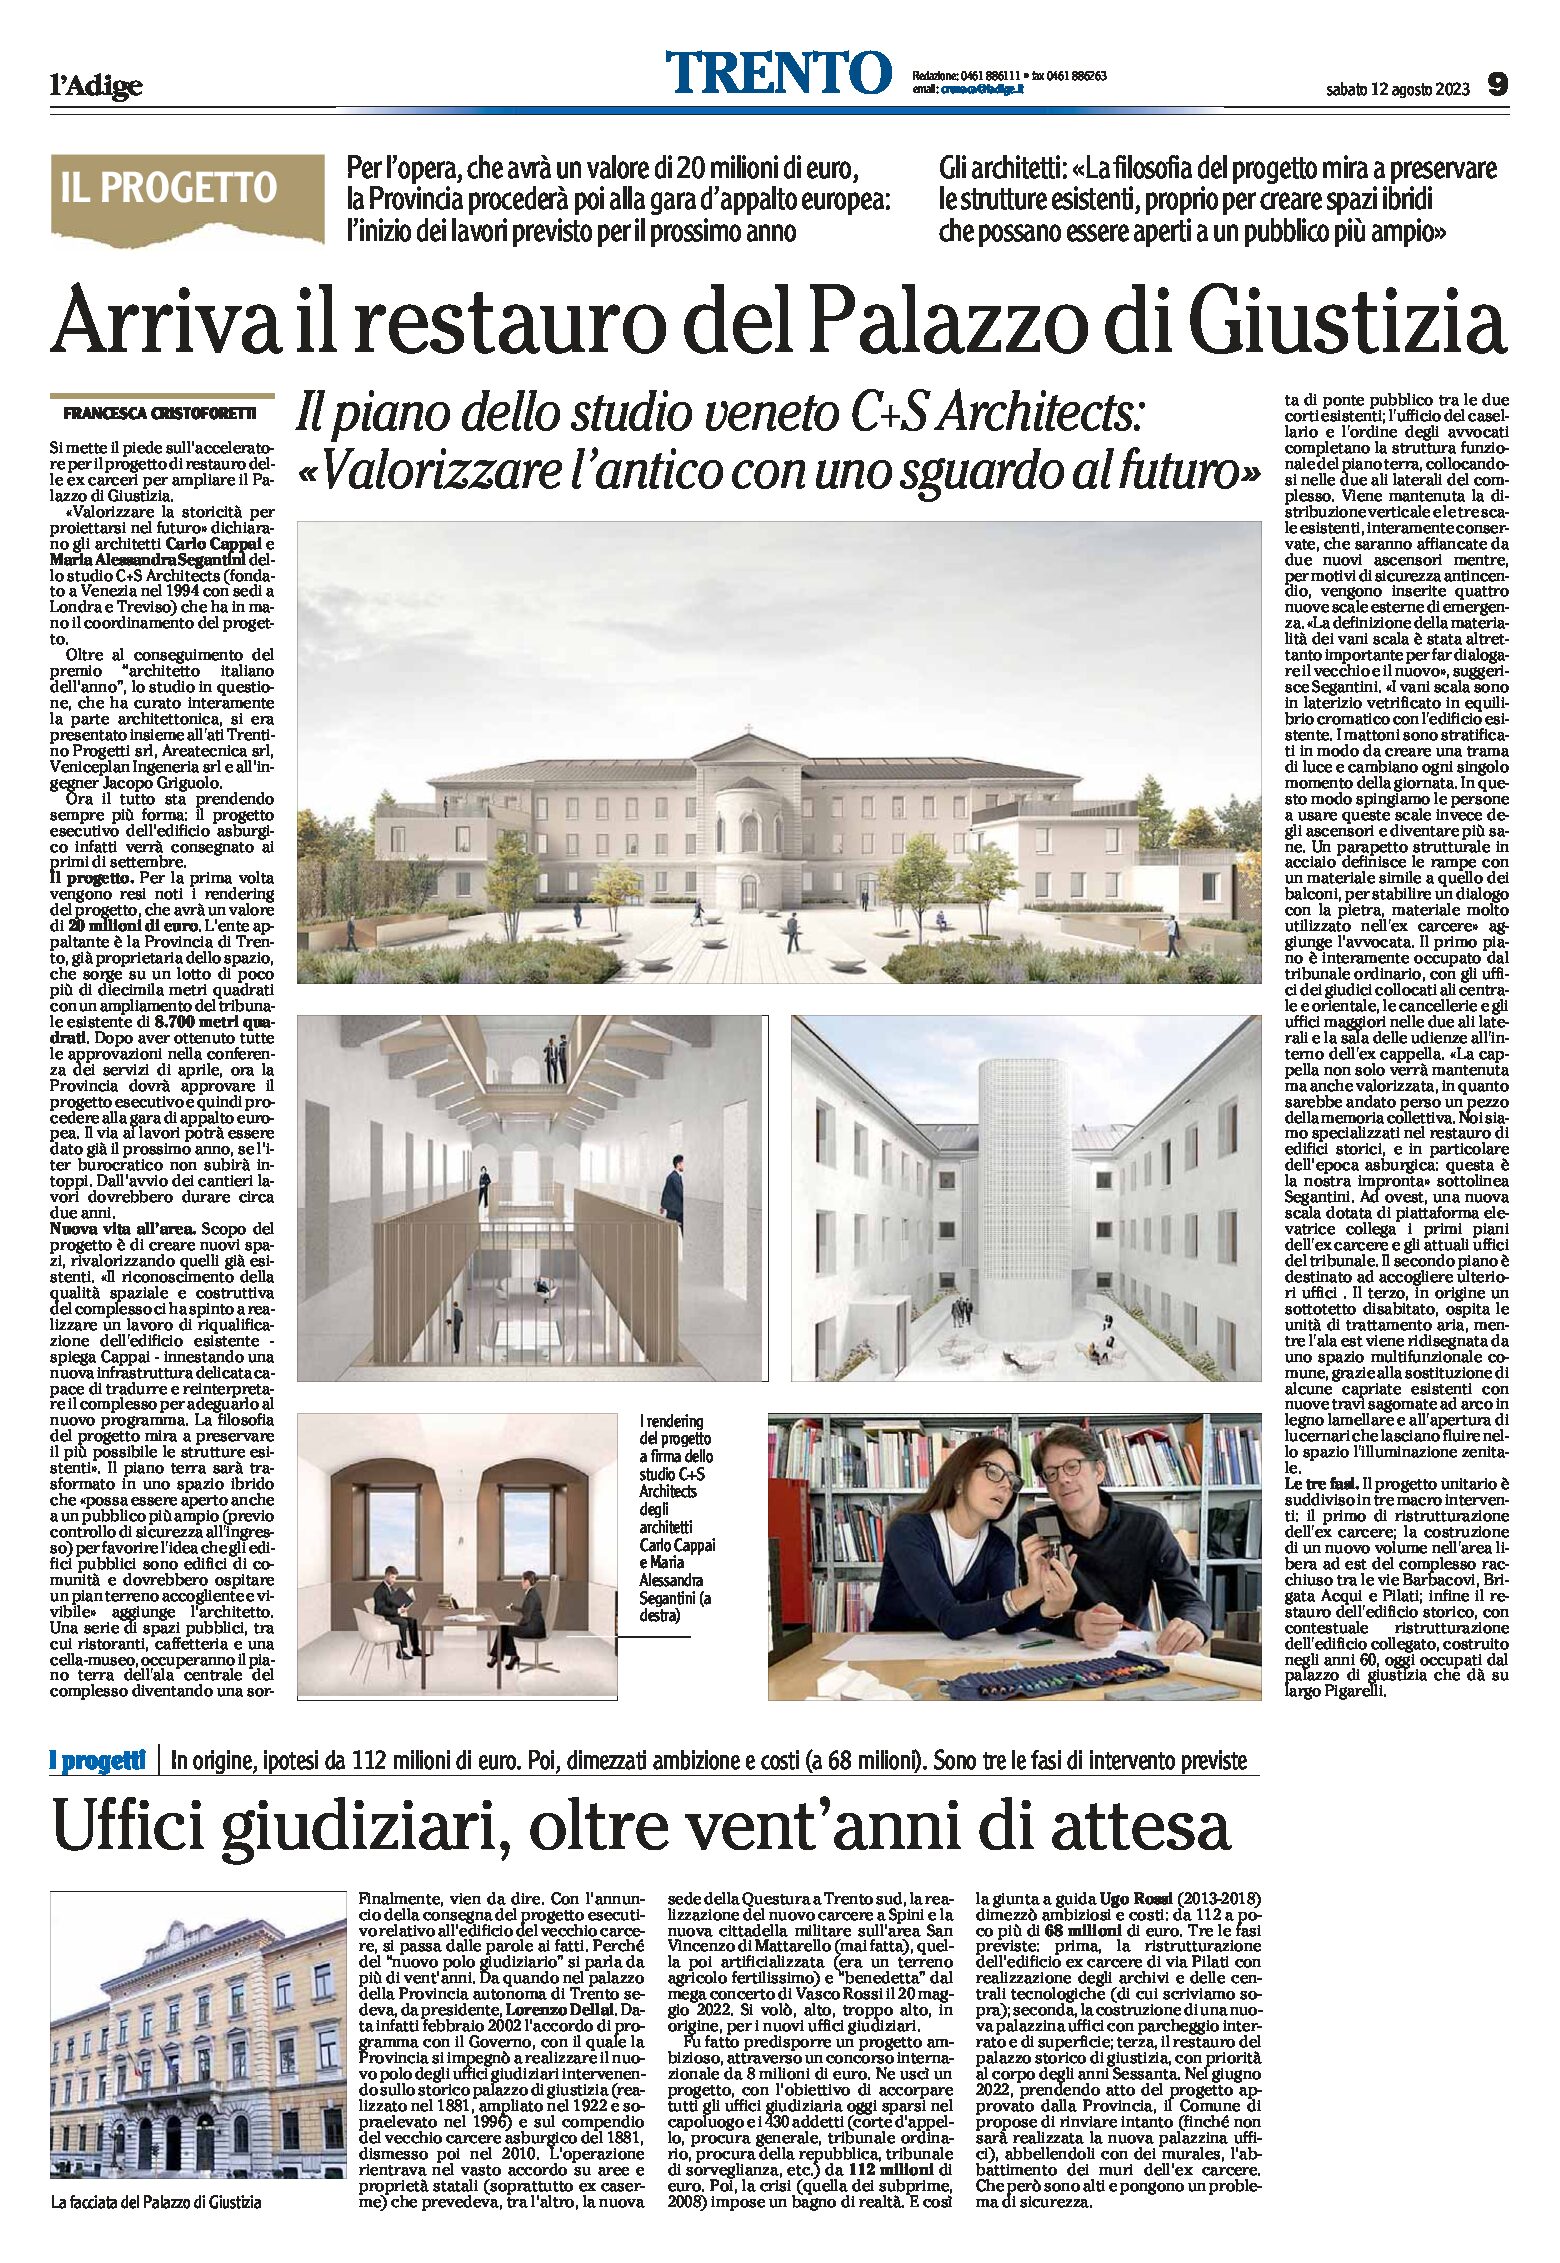 Trento, palazzo di Giustizia: arriva il restauro